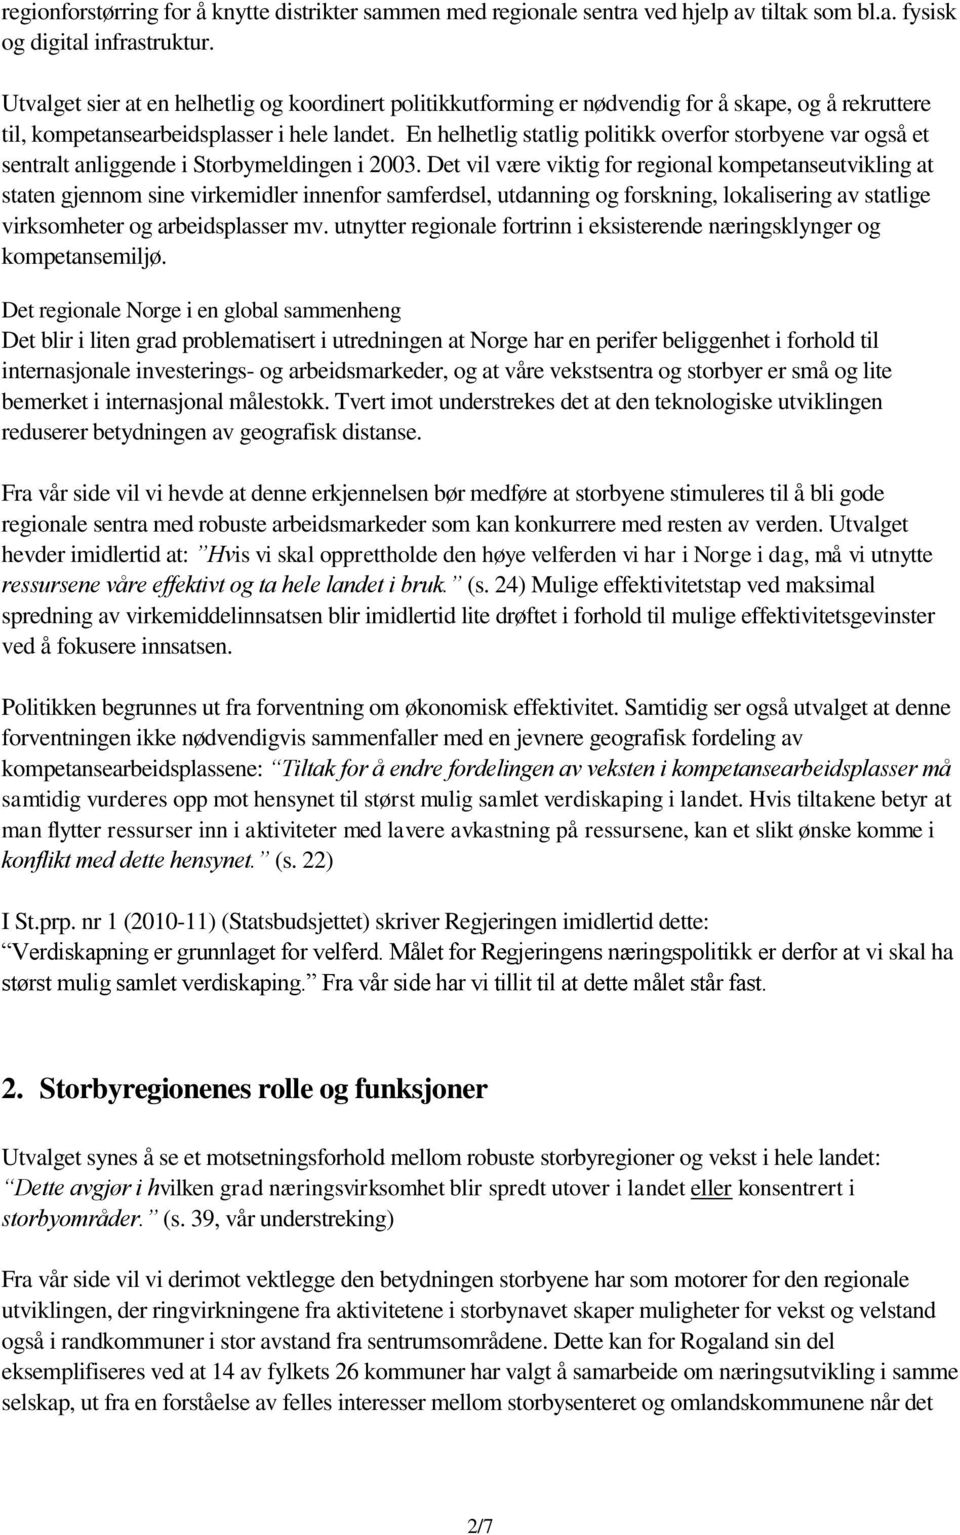 En helhetlig statlig politikk overfor storbyene var også et sentralt anliggende i Storbymeldingen i 2003.